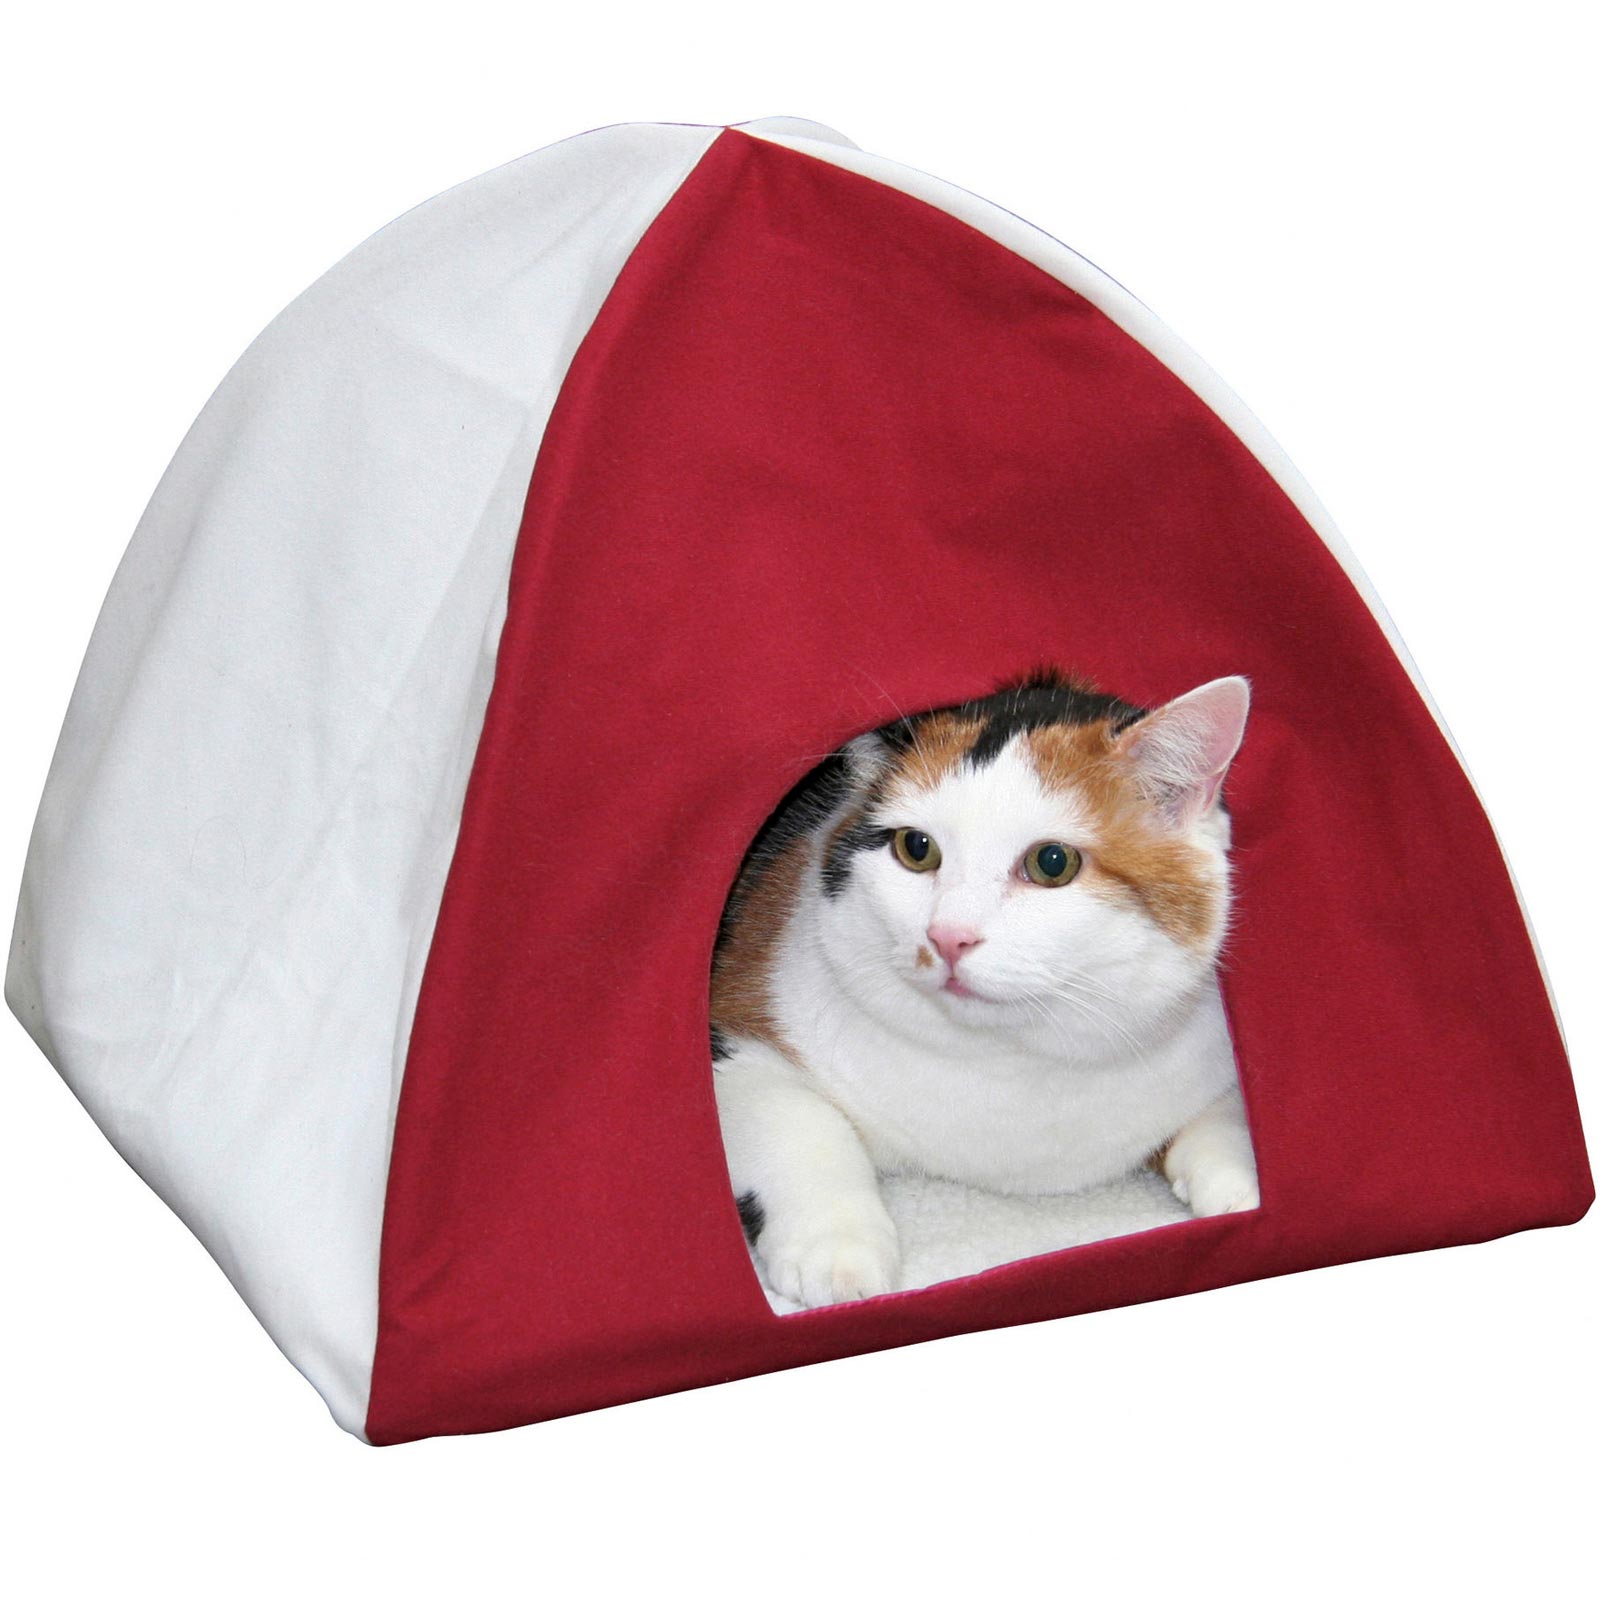 Cat tent TIPI 40x40x35cm